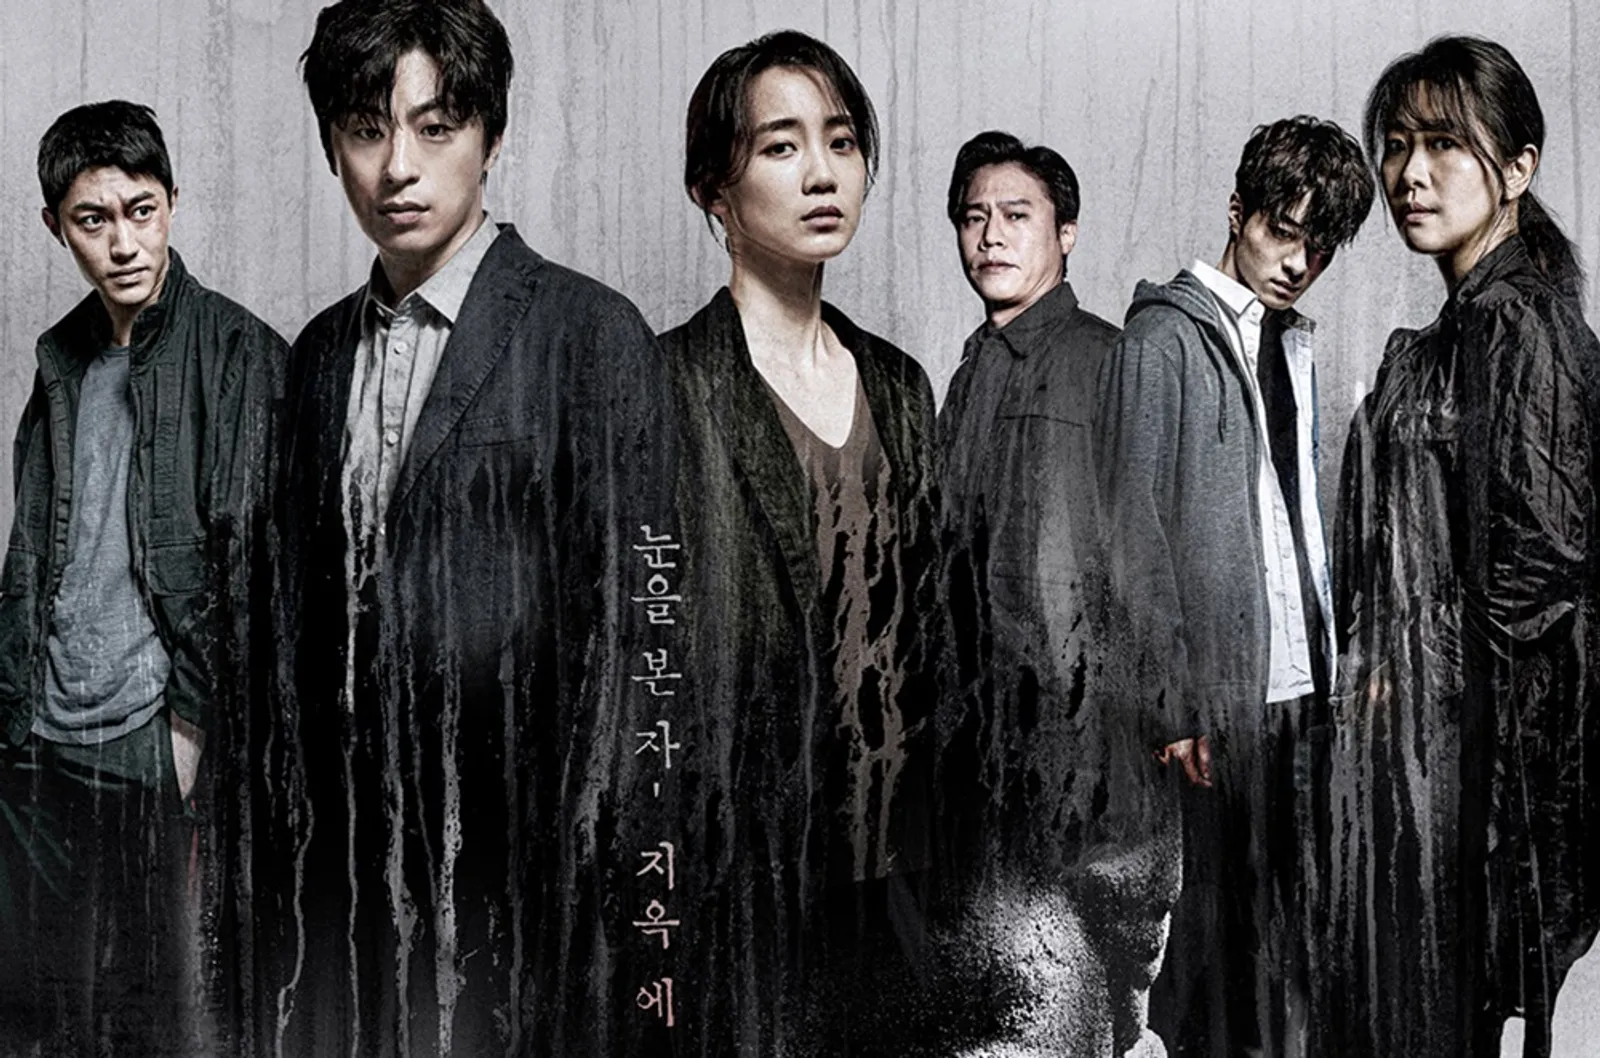 Duet Shin Hyun Bin & Goo Kyo Hwan Hadapi Kutukan di 'Monstrous'